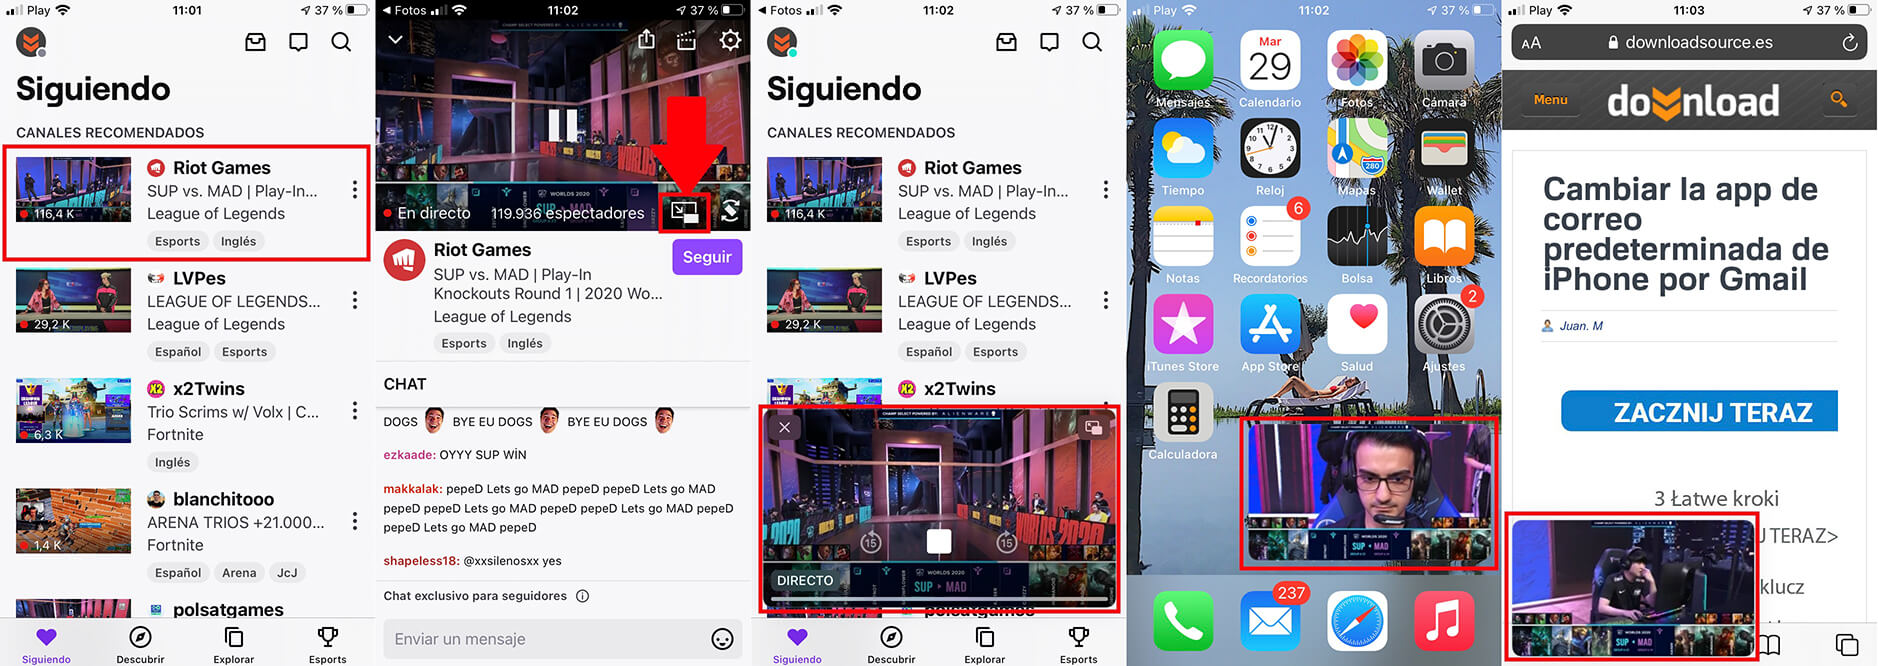 apps compatible con los videos imagen en imagen de iPhone con ios 14